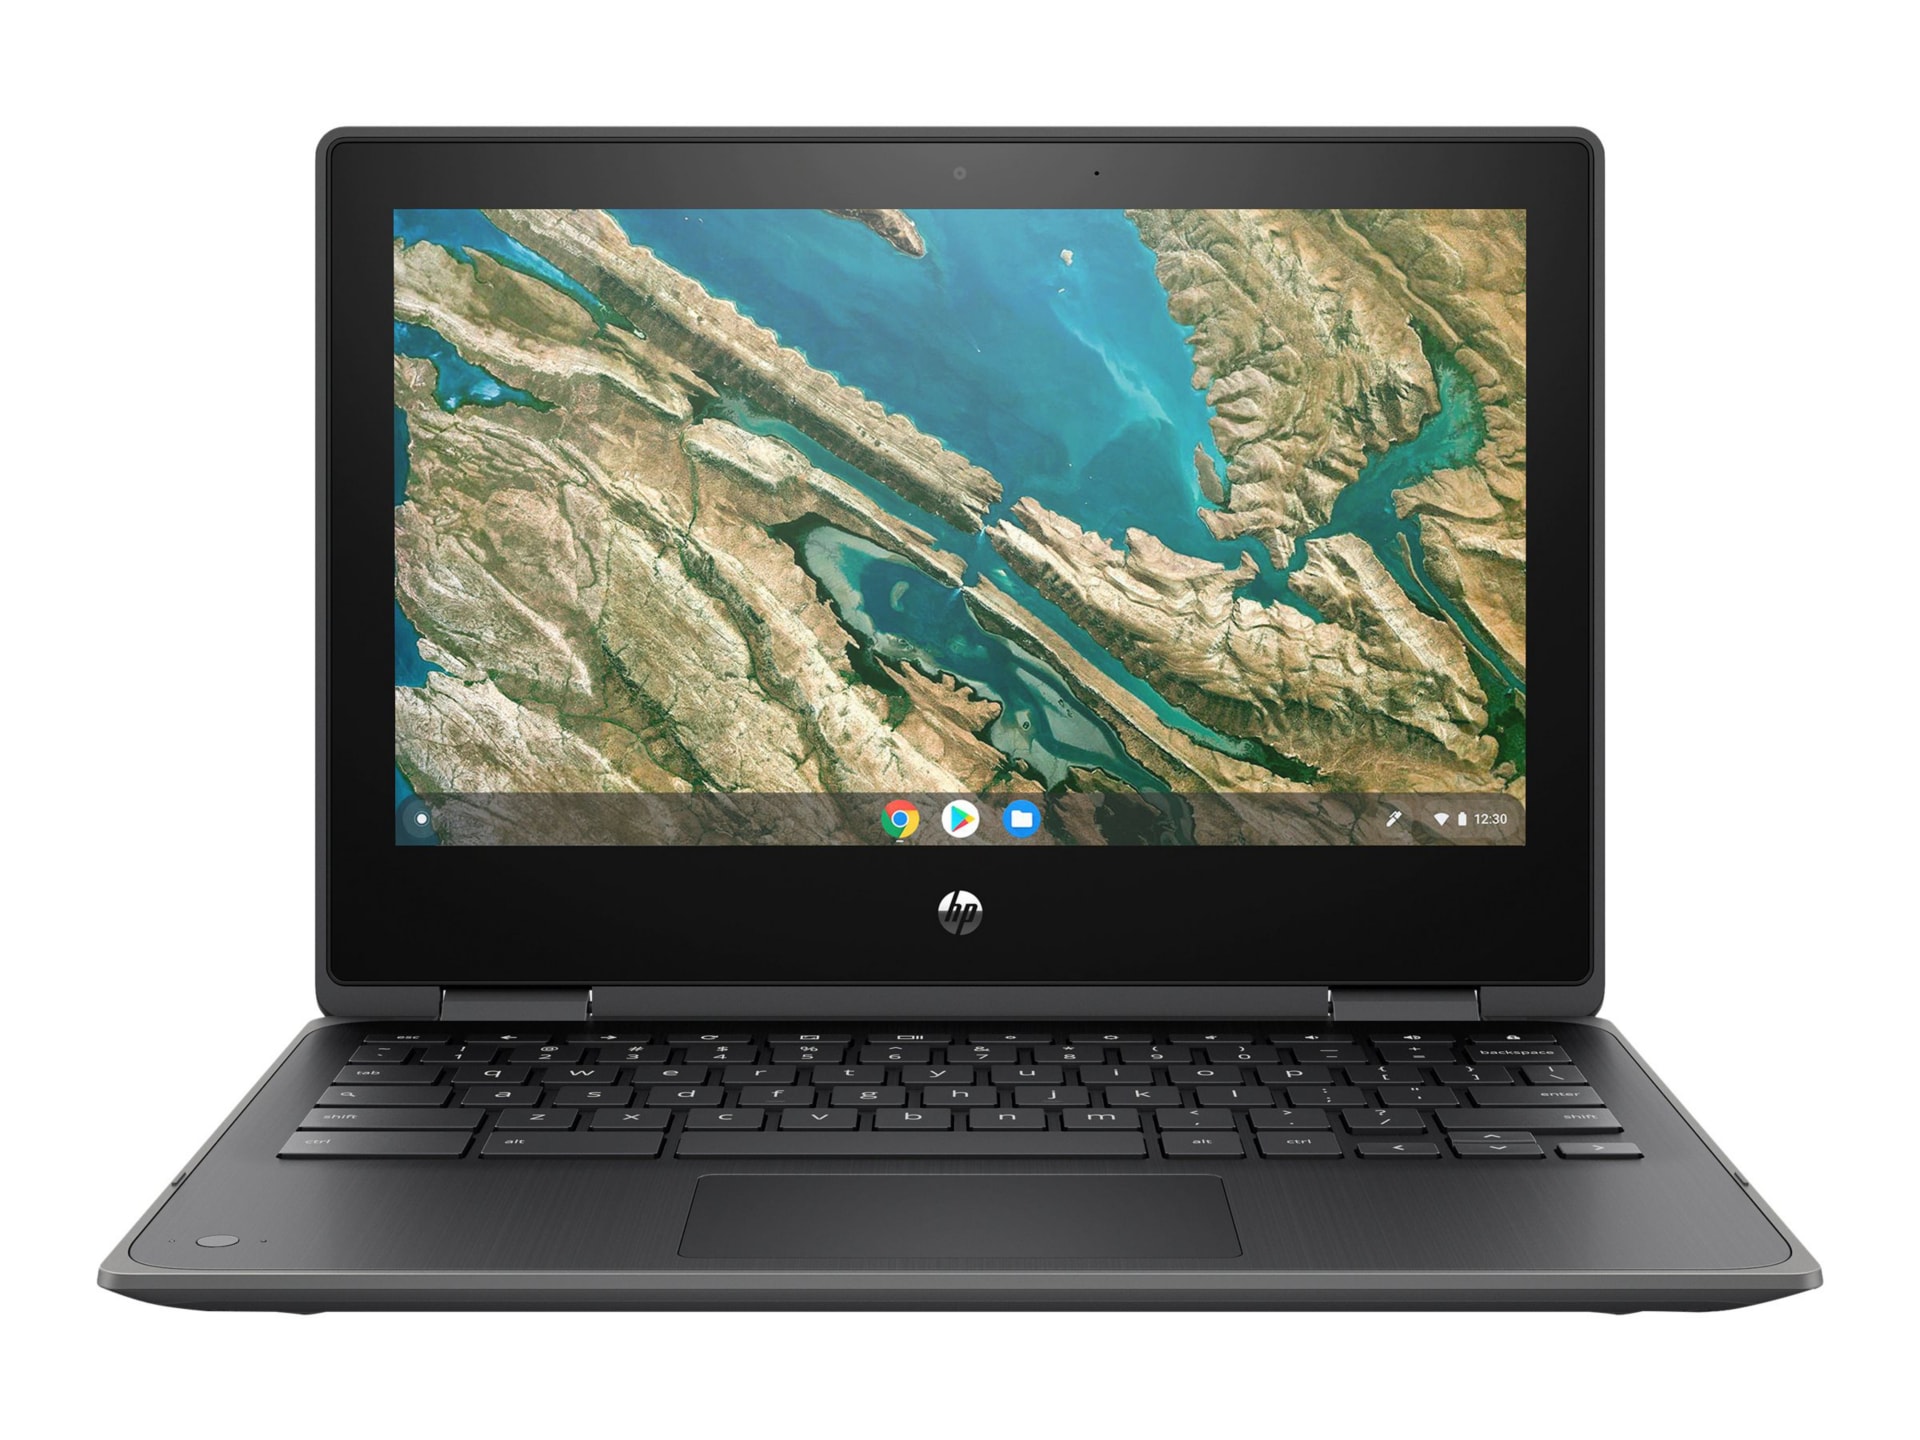 HP Chromebook x360 11 G3 Education Edition - 11.6" - Celeron N4020 - 4 GB RAM - 32 GB eMMC - US